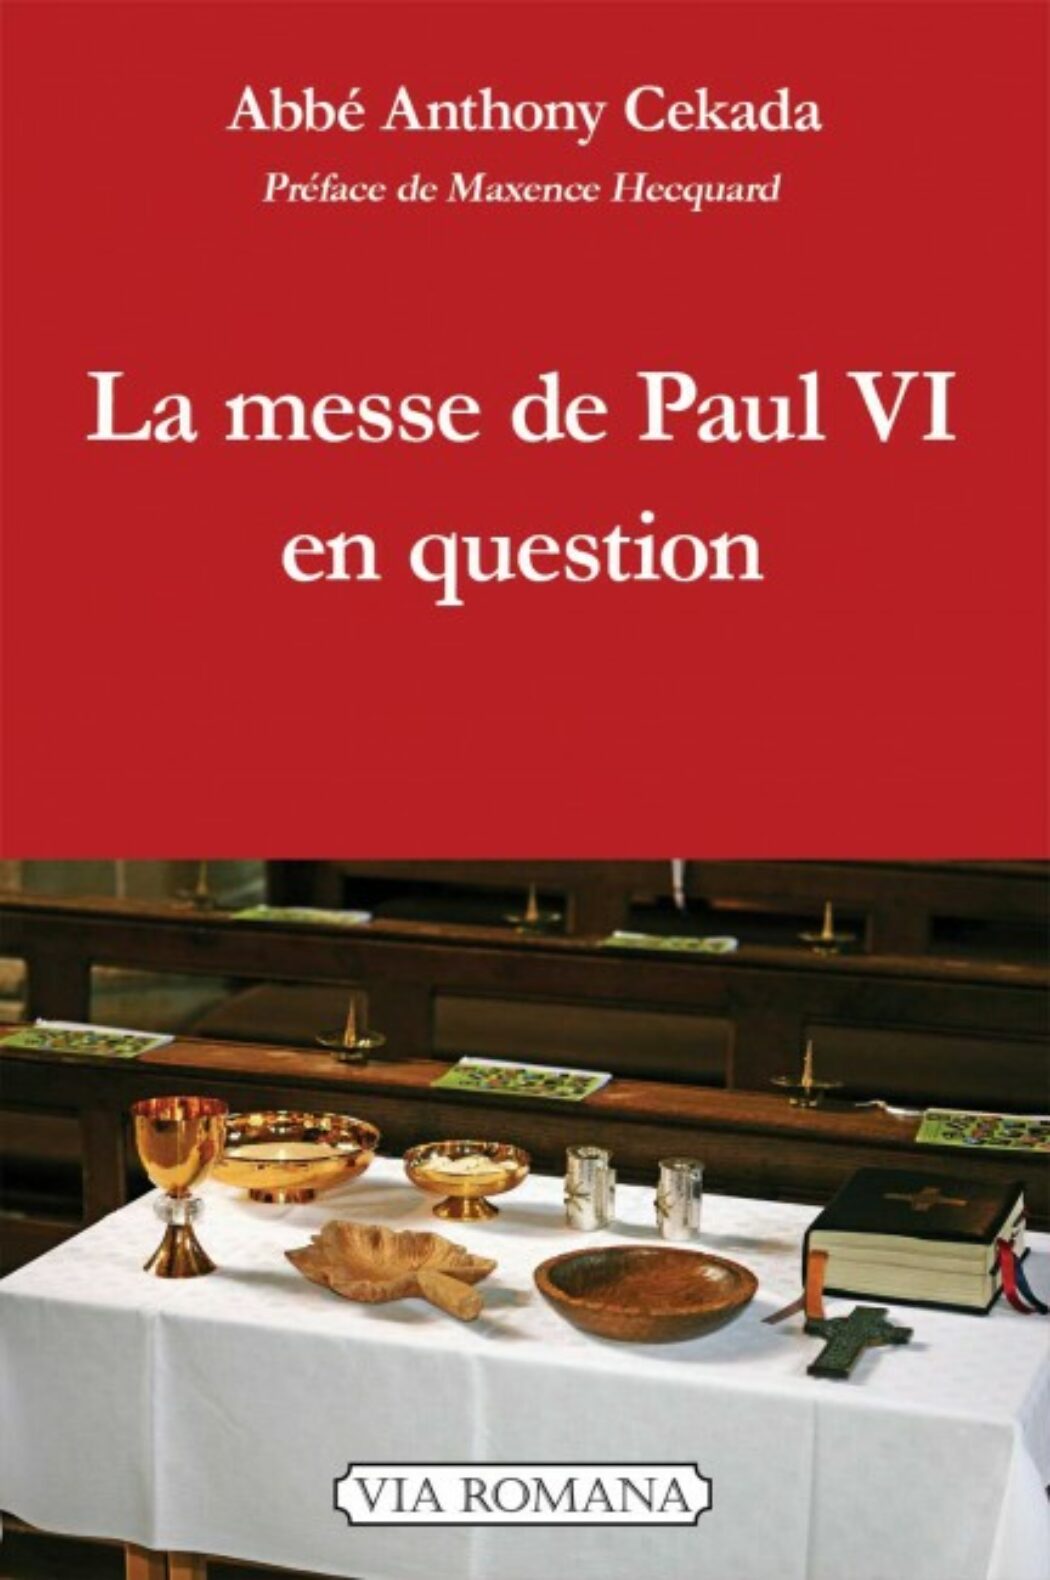 La messe de Paul VI constitue  une fracture et une rupture complète avec la tradition liturgique